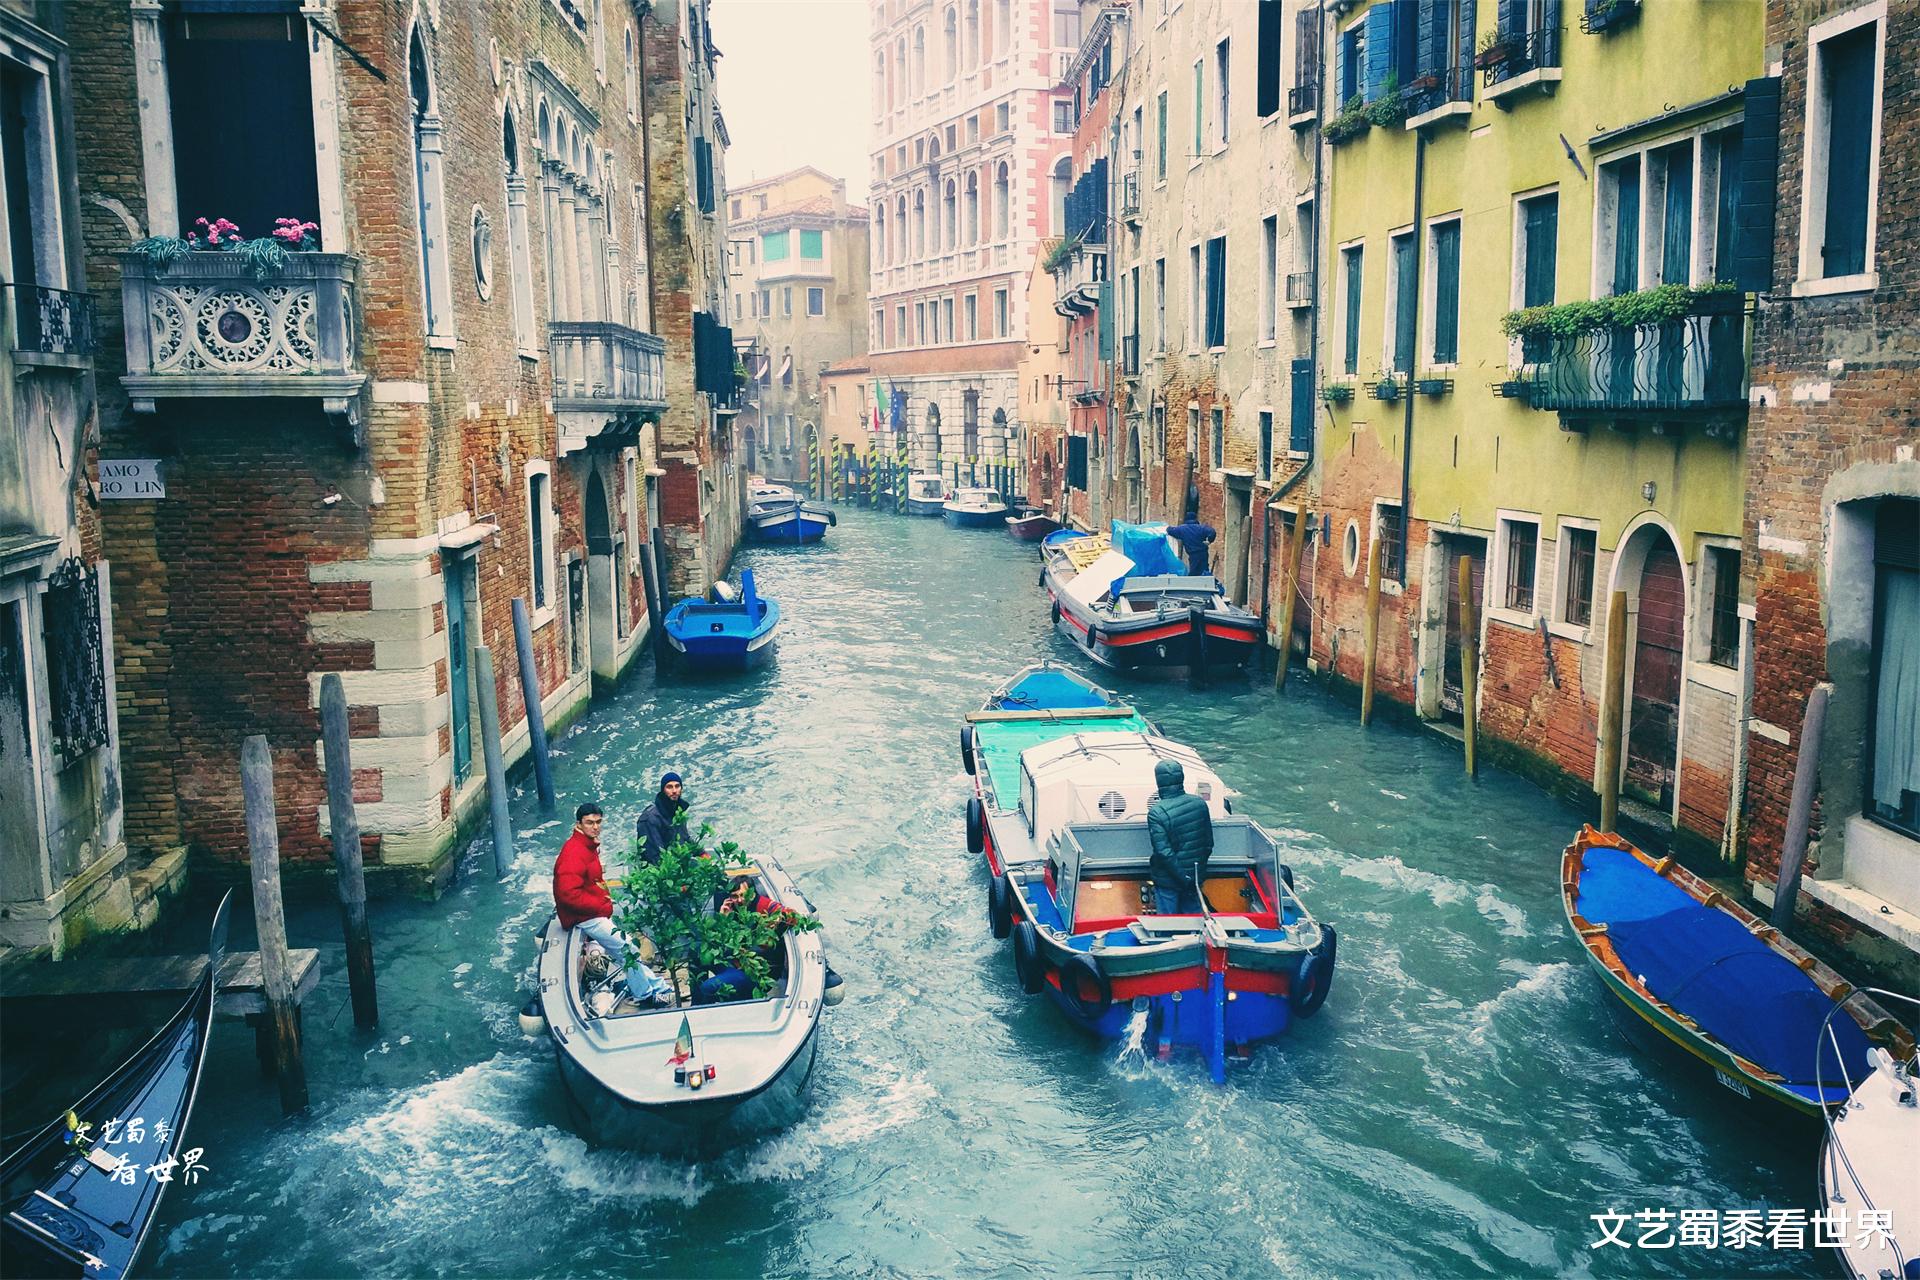 威尼斯|威尼斯会被海水淹没吗？那里仿佛童话世界一般，海水怎会那般无情